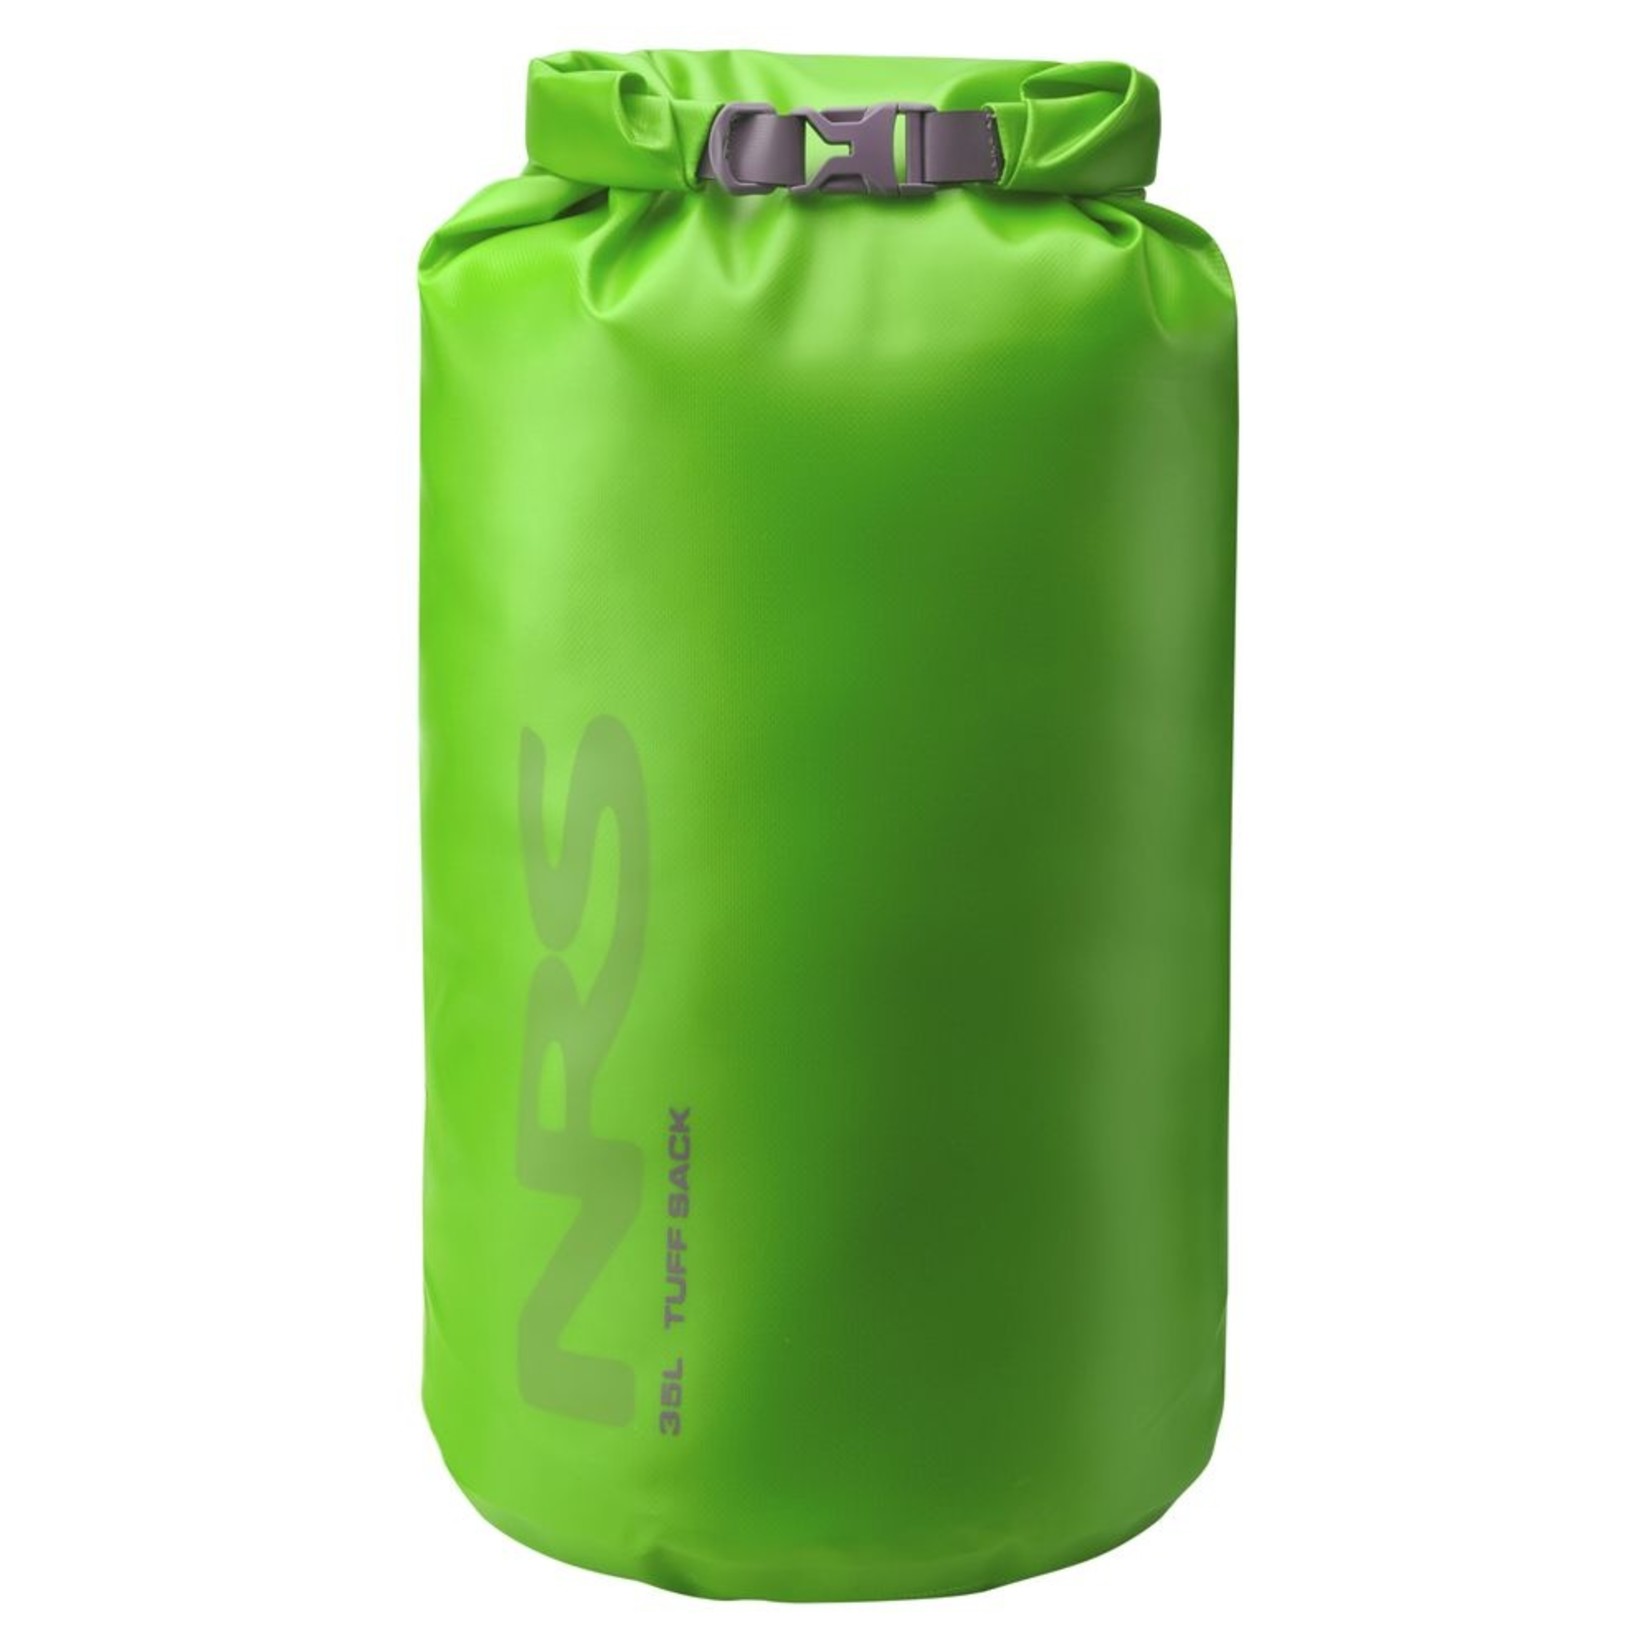 NRS NRS Tuff Sack Dry Bag 35 Liters